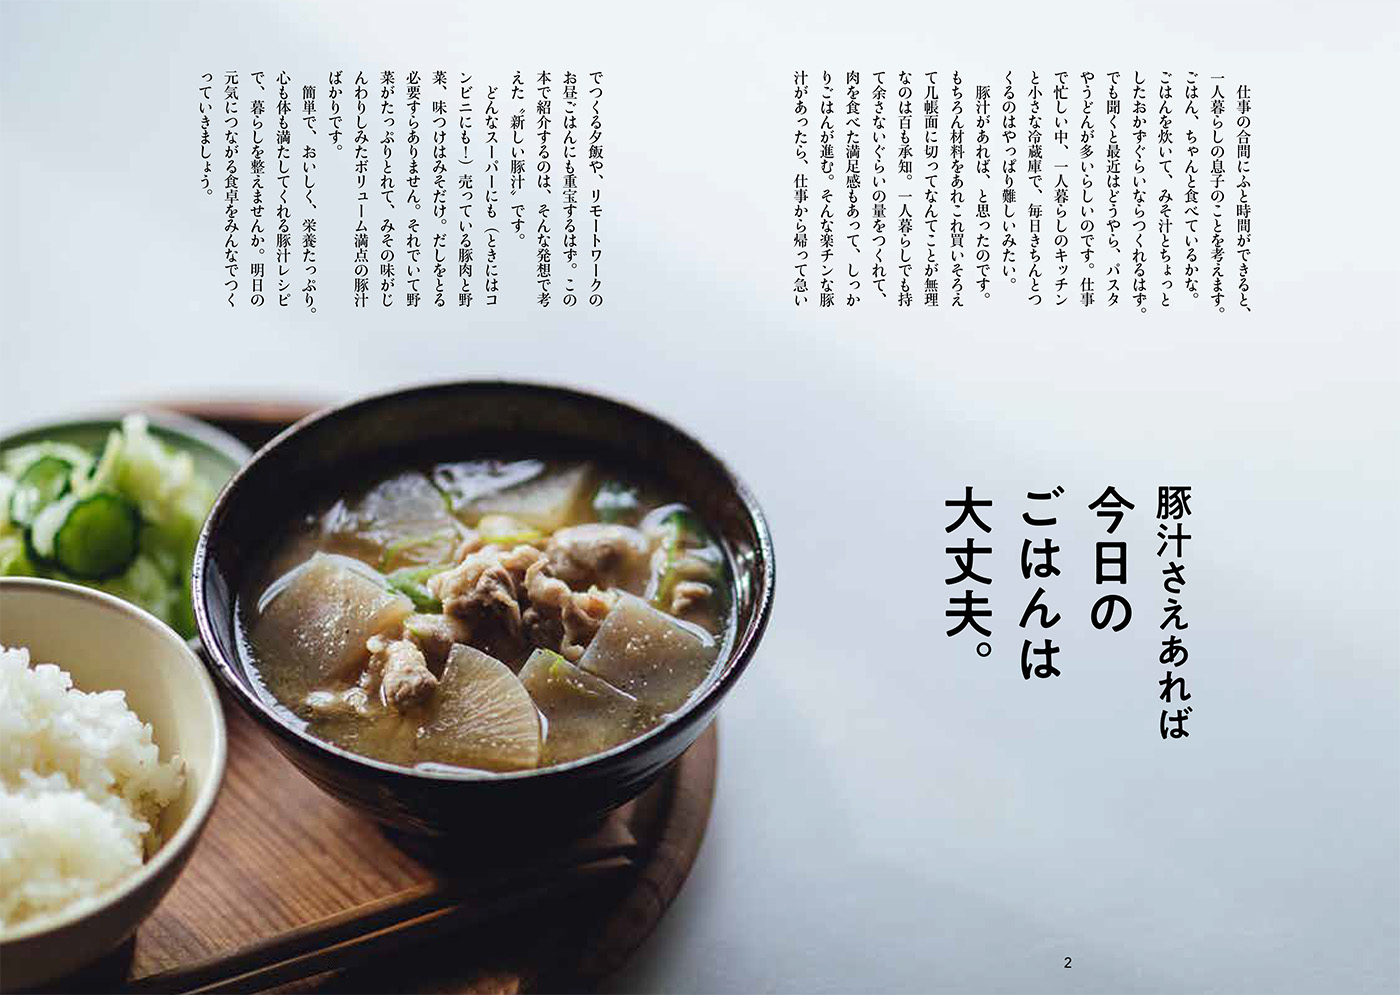 楽天ブックス: 有賀薫の豚汁レボリューション - 野菜一品からつくる50